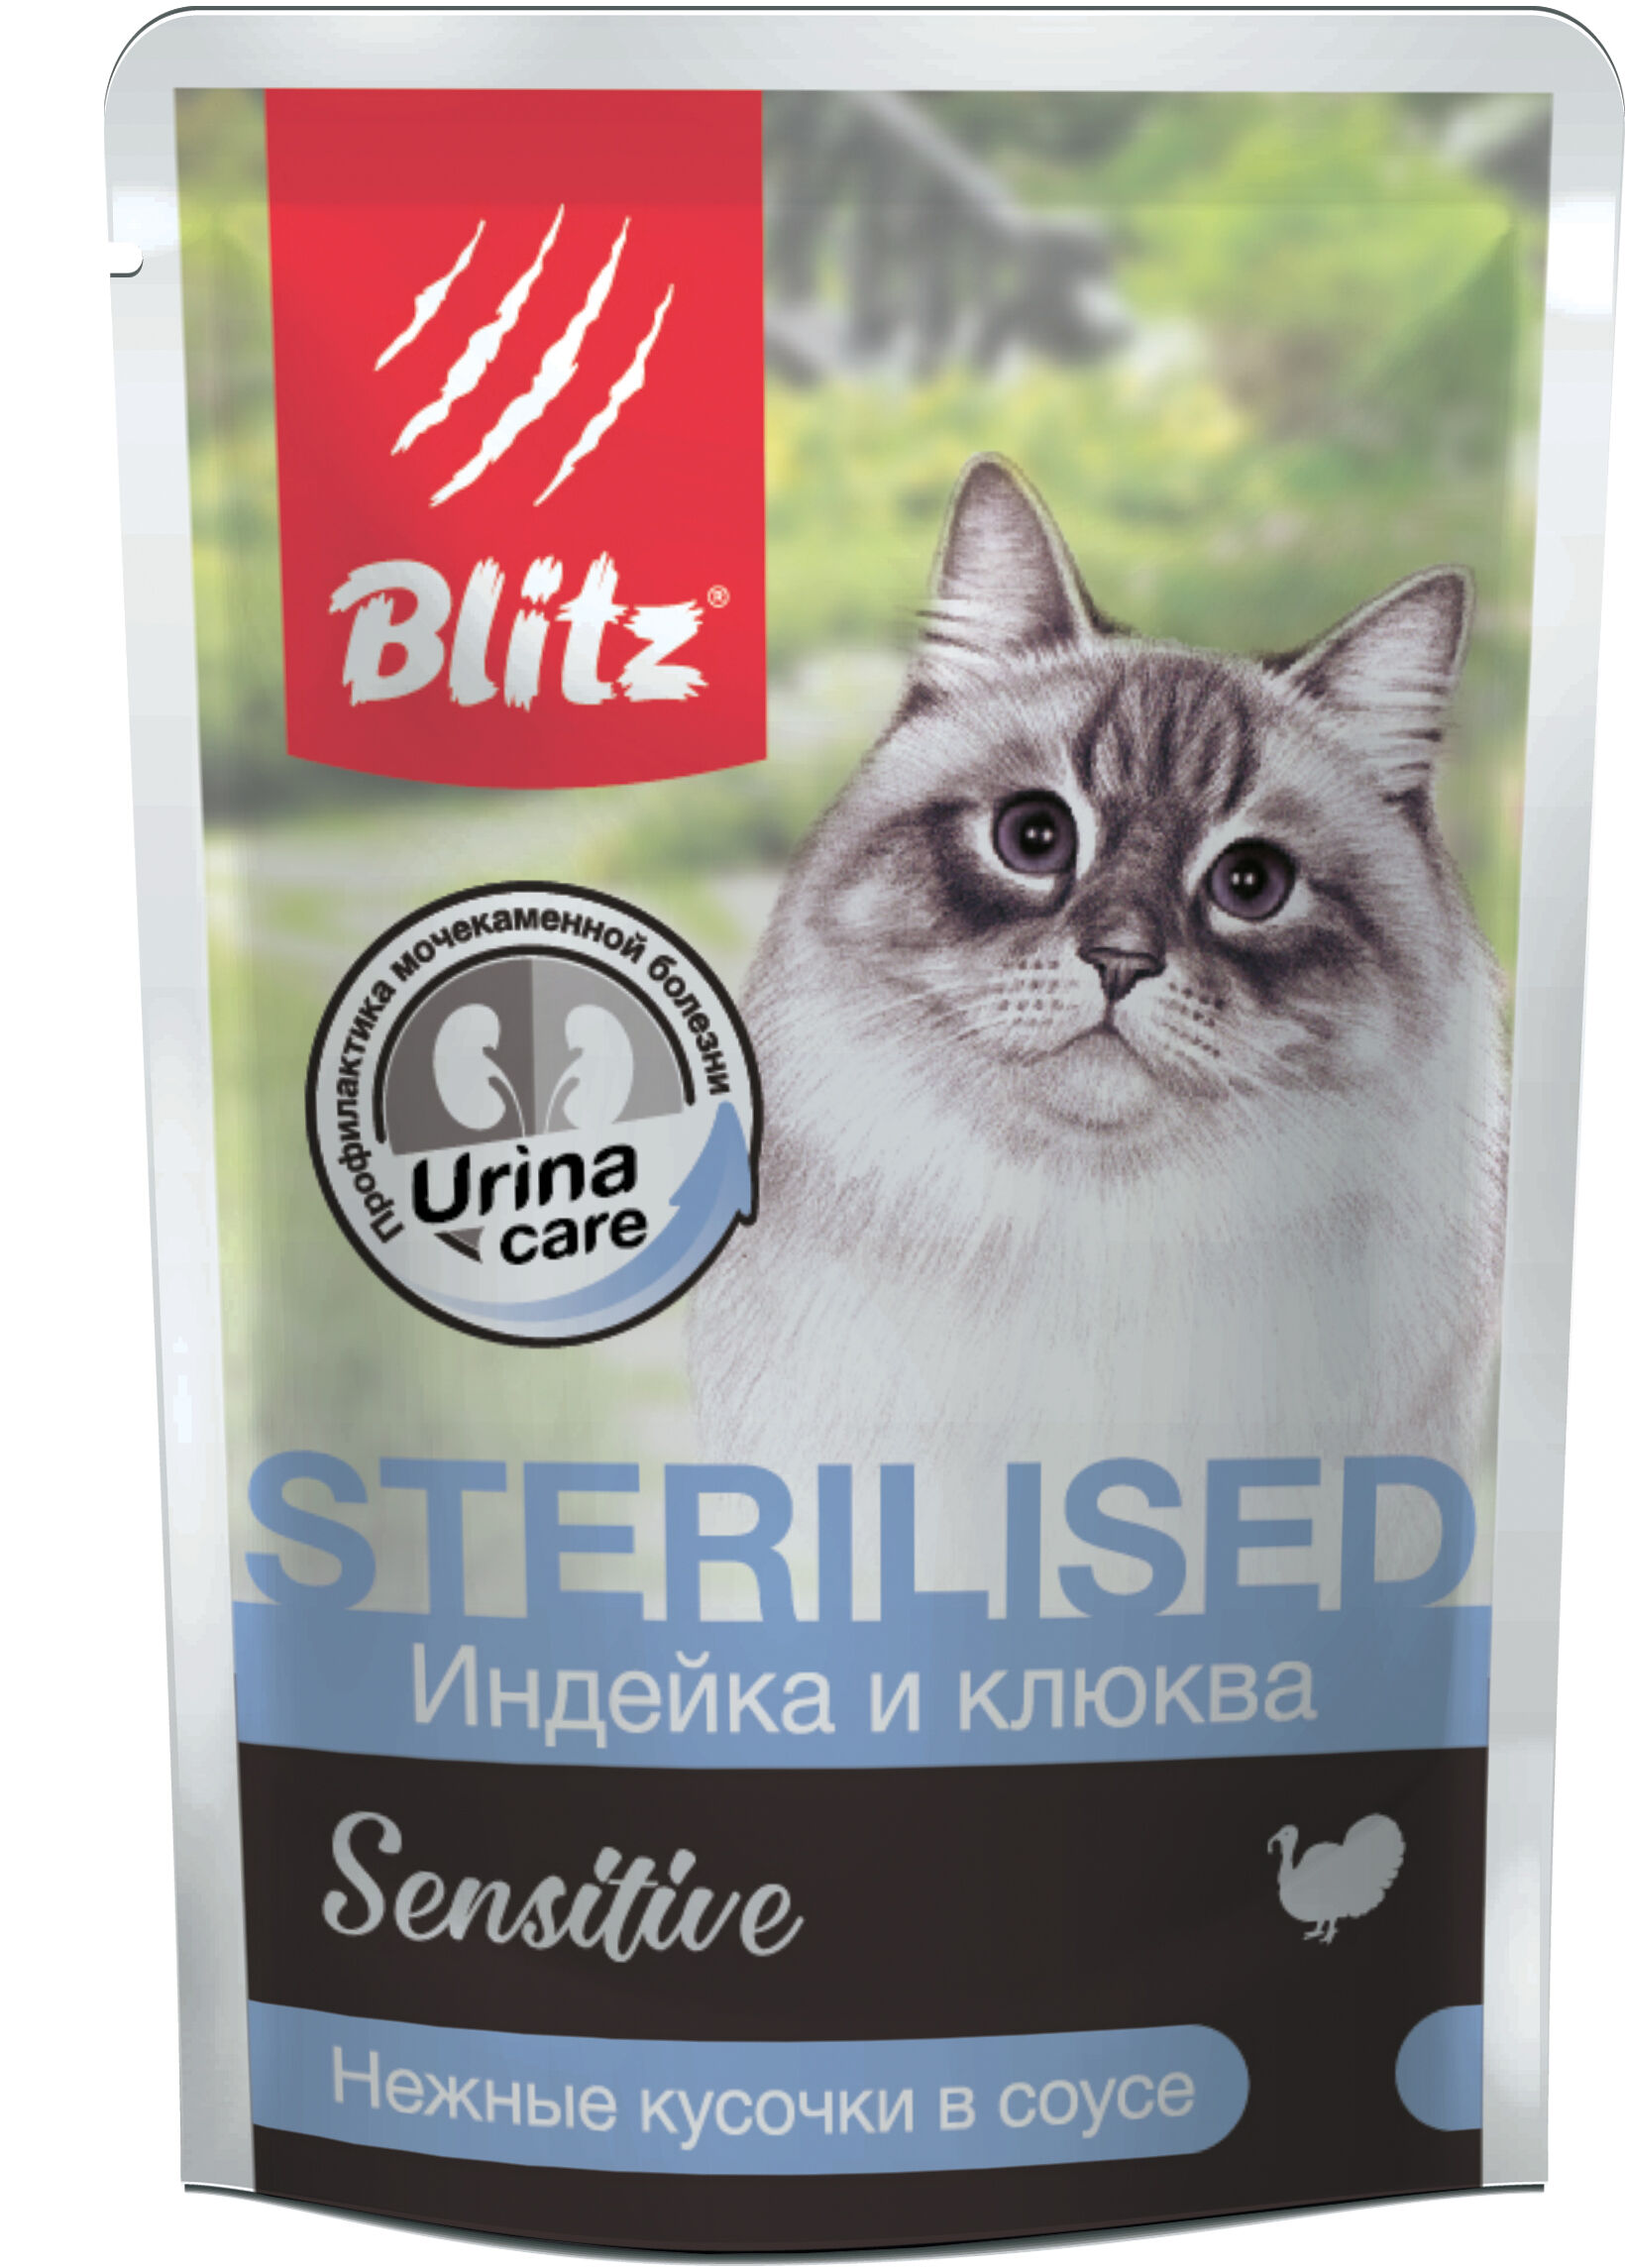 Blitz Sensitive Sterilised пауч для кошек индейка клюква 85г